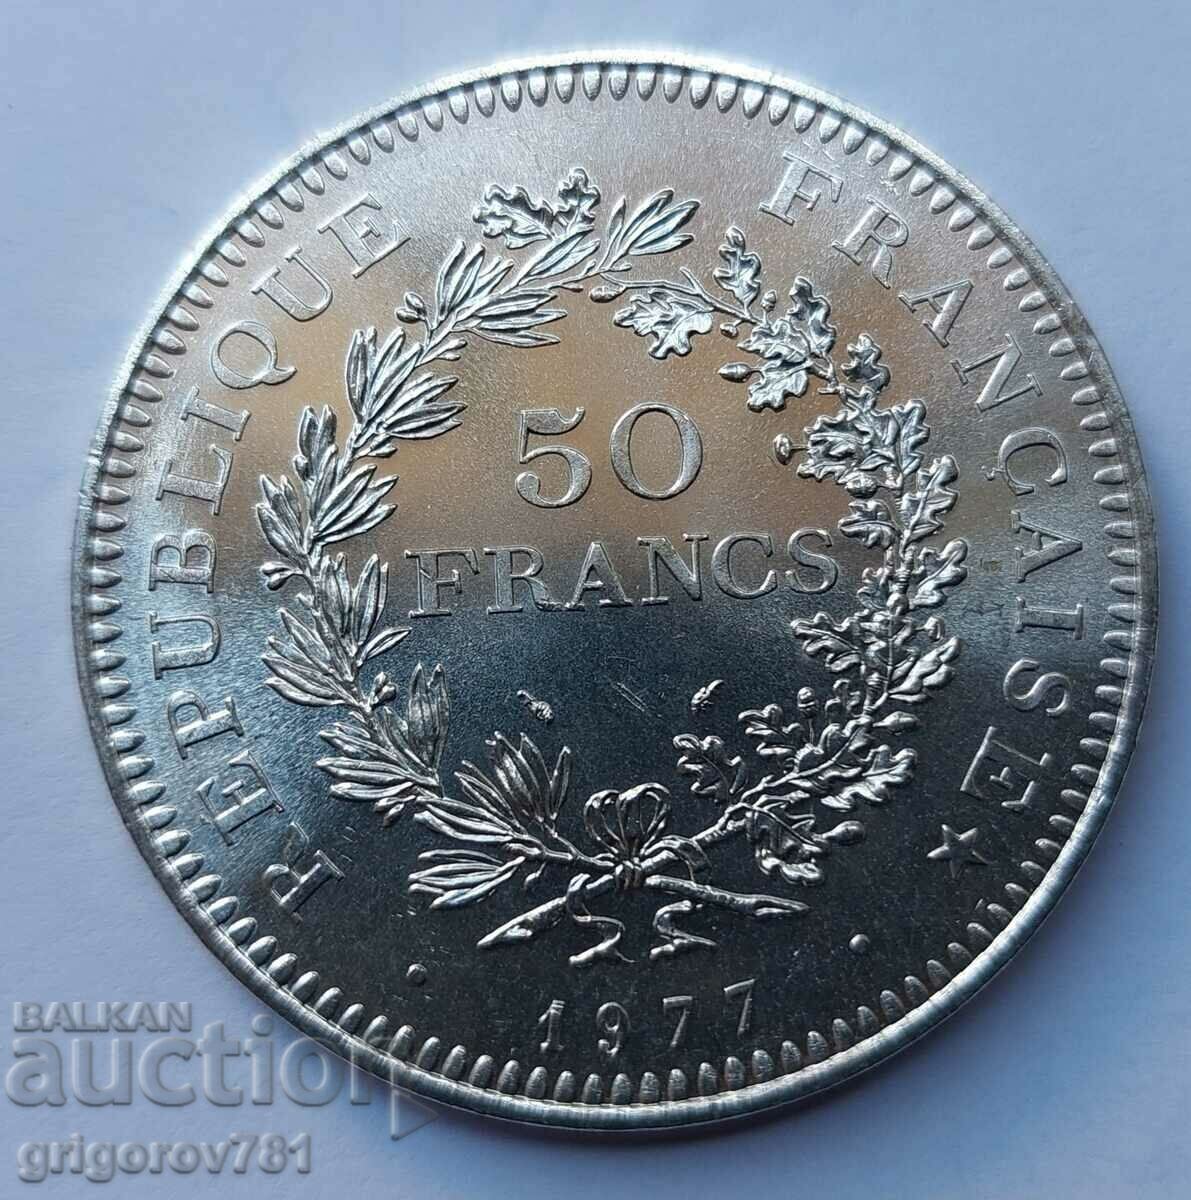 50 Franci Argint Franta 1977 - Moneda de argint #34